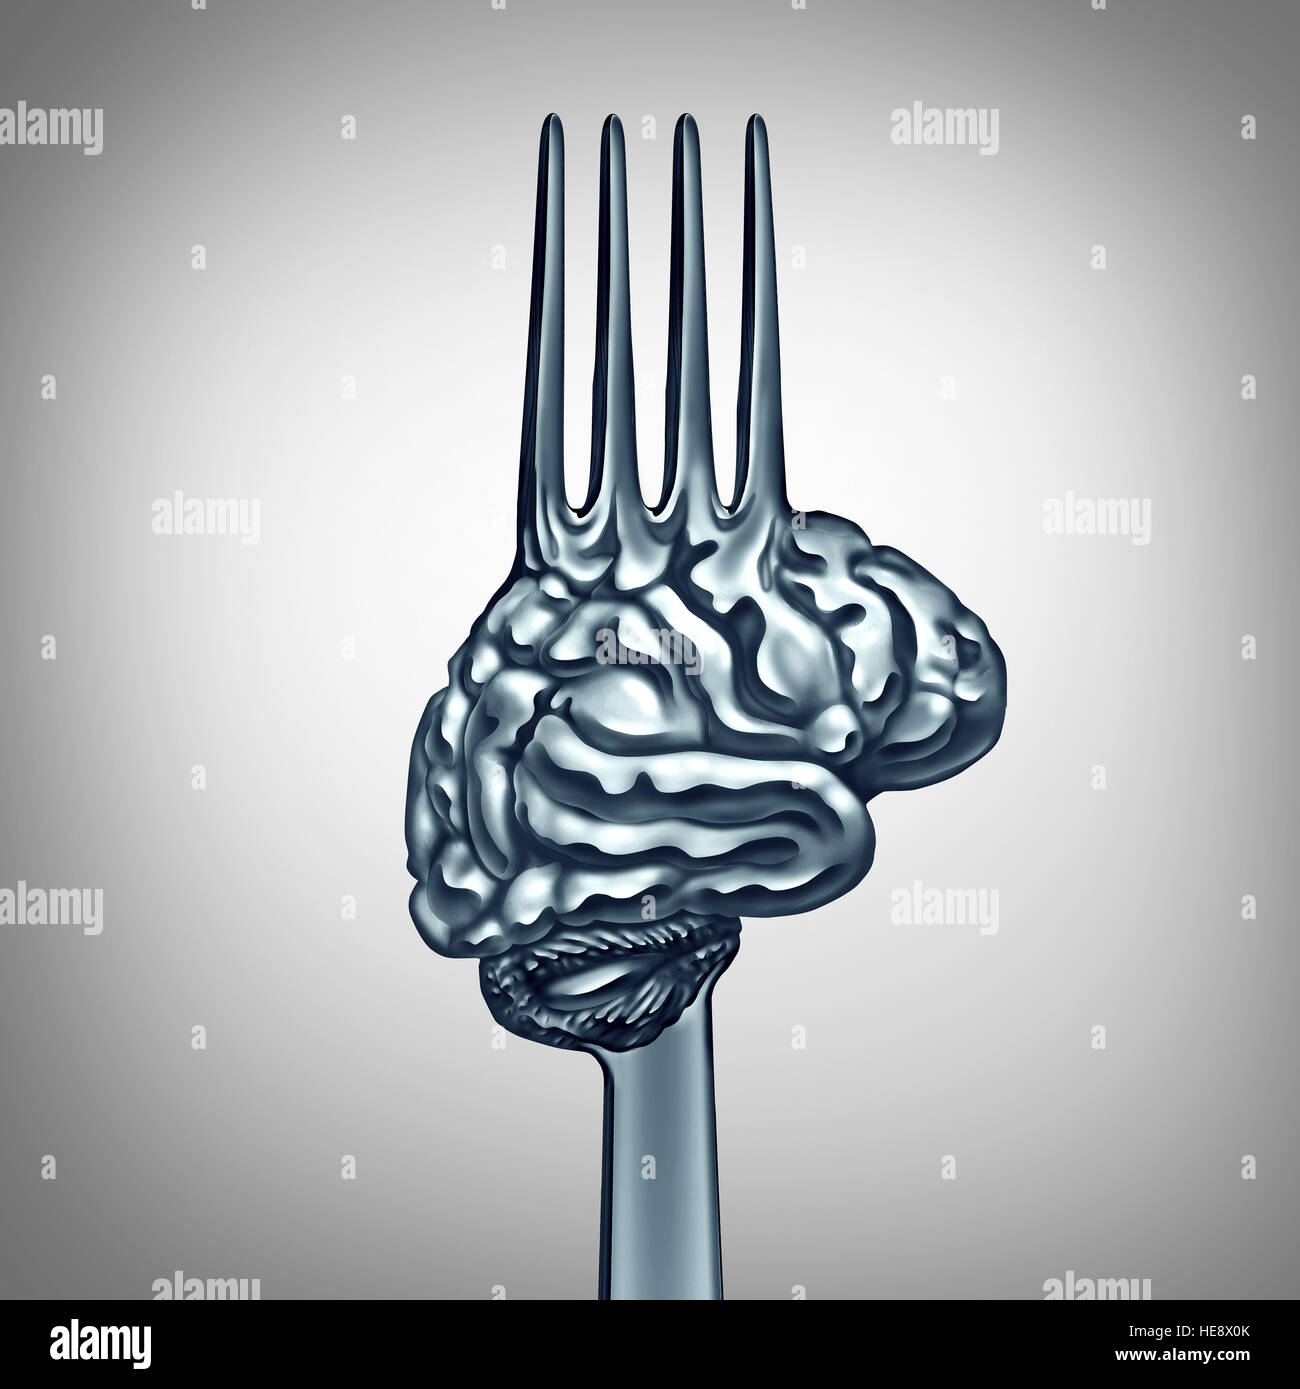 Gehirn Essen Symbol als ein Metall Gabel geformt als ein Organ des menschlichen Denkens, Brainpower mit Ernährungskonzept zum Geist Gesundheit oder kluge s steigern Stockfoto